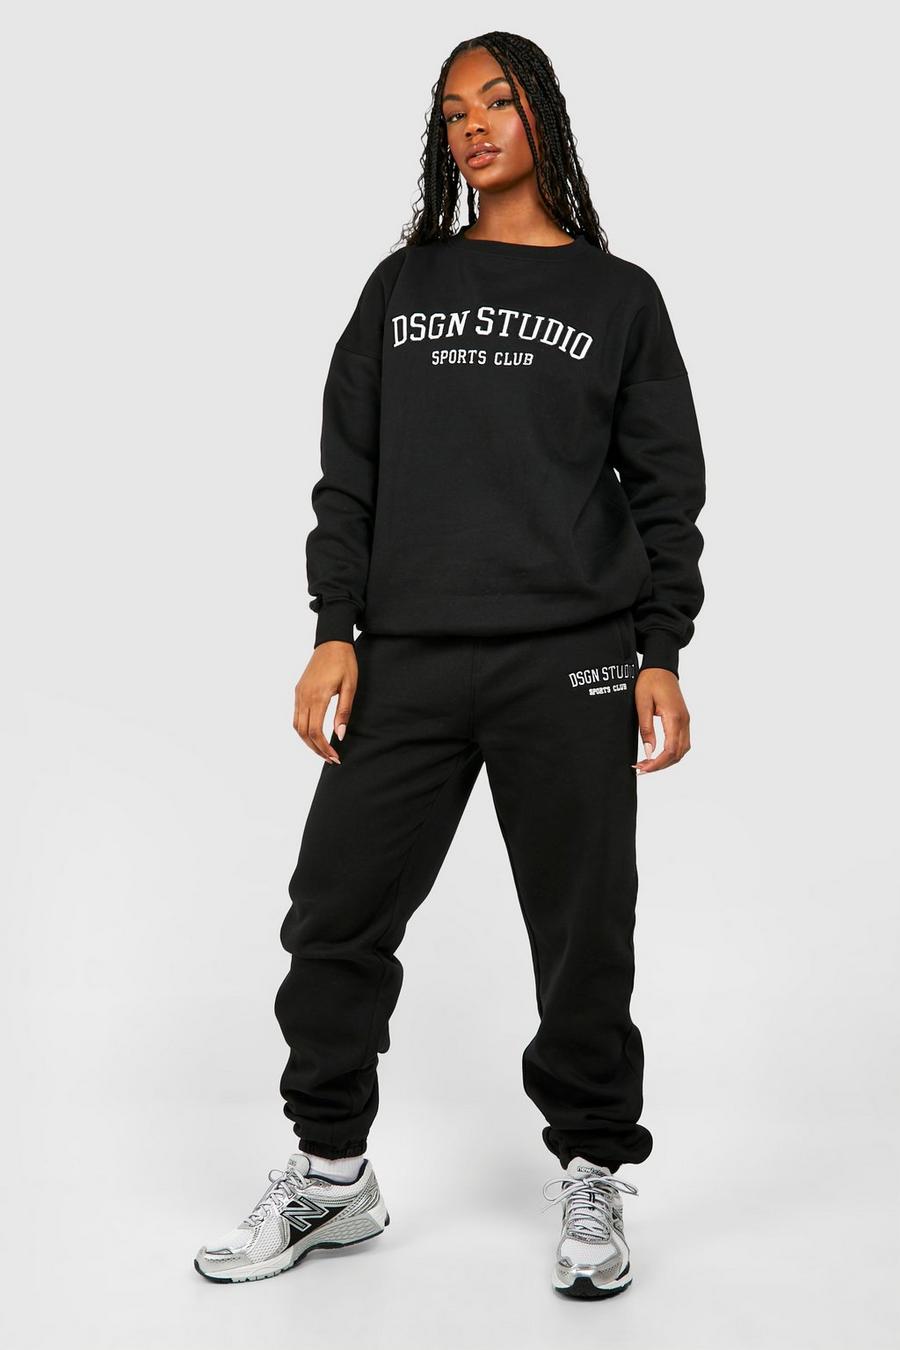 Pantalón deportivo Tall con aplique Dsgn Studio, Black